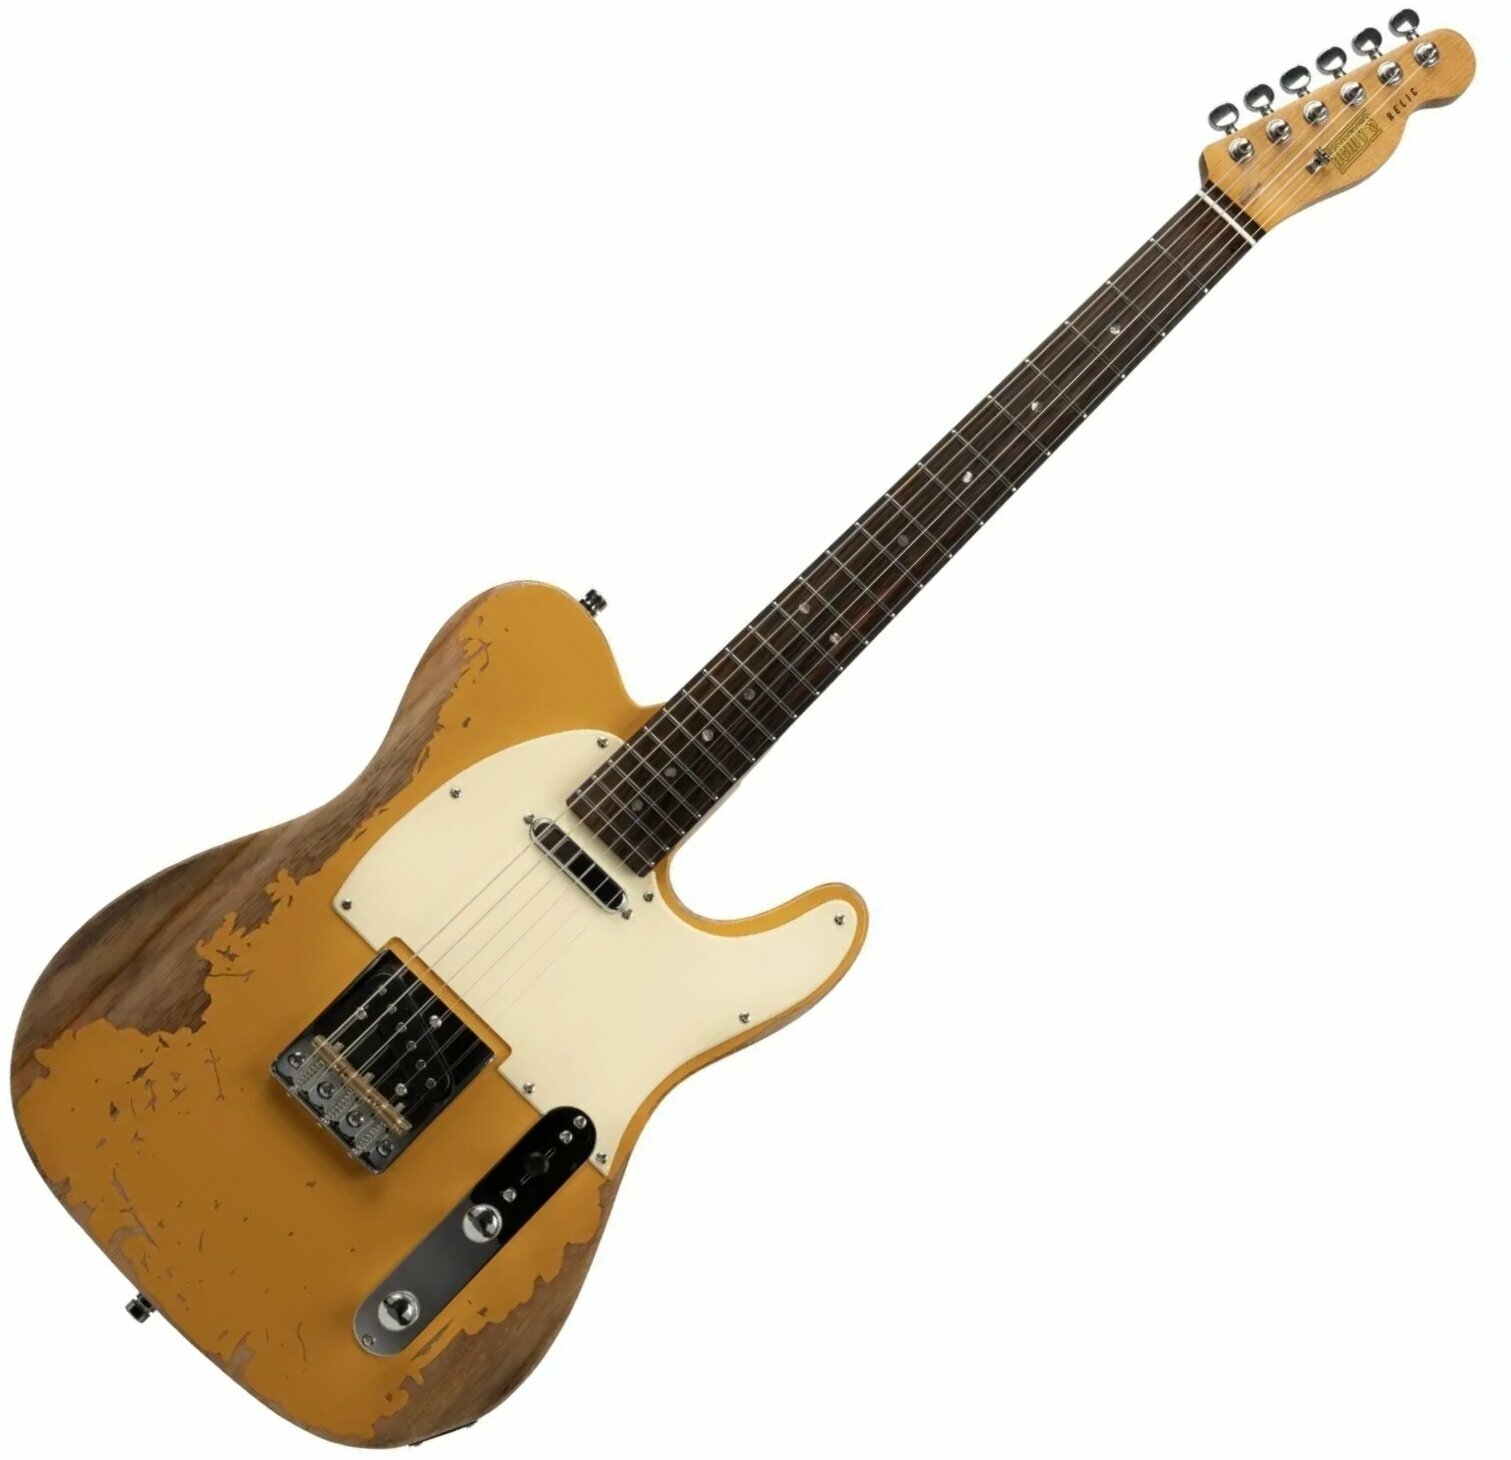 Guitarra elétrica Henry's TL-1 The Comet Yellow Relic